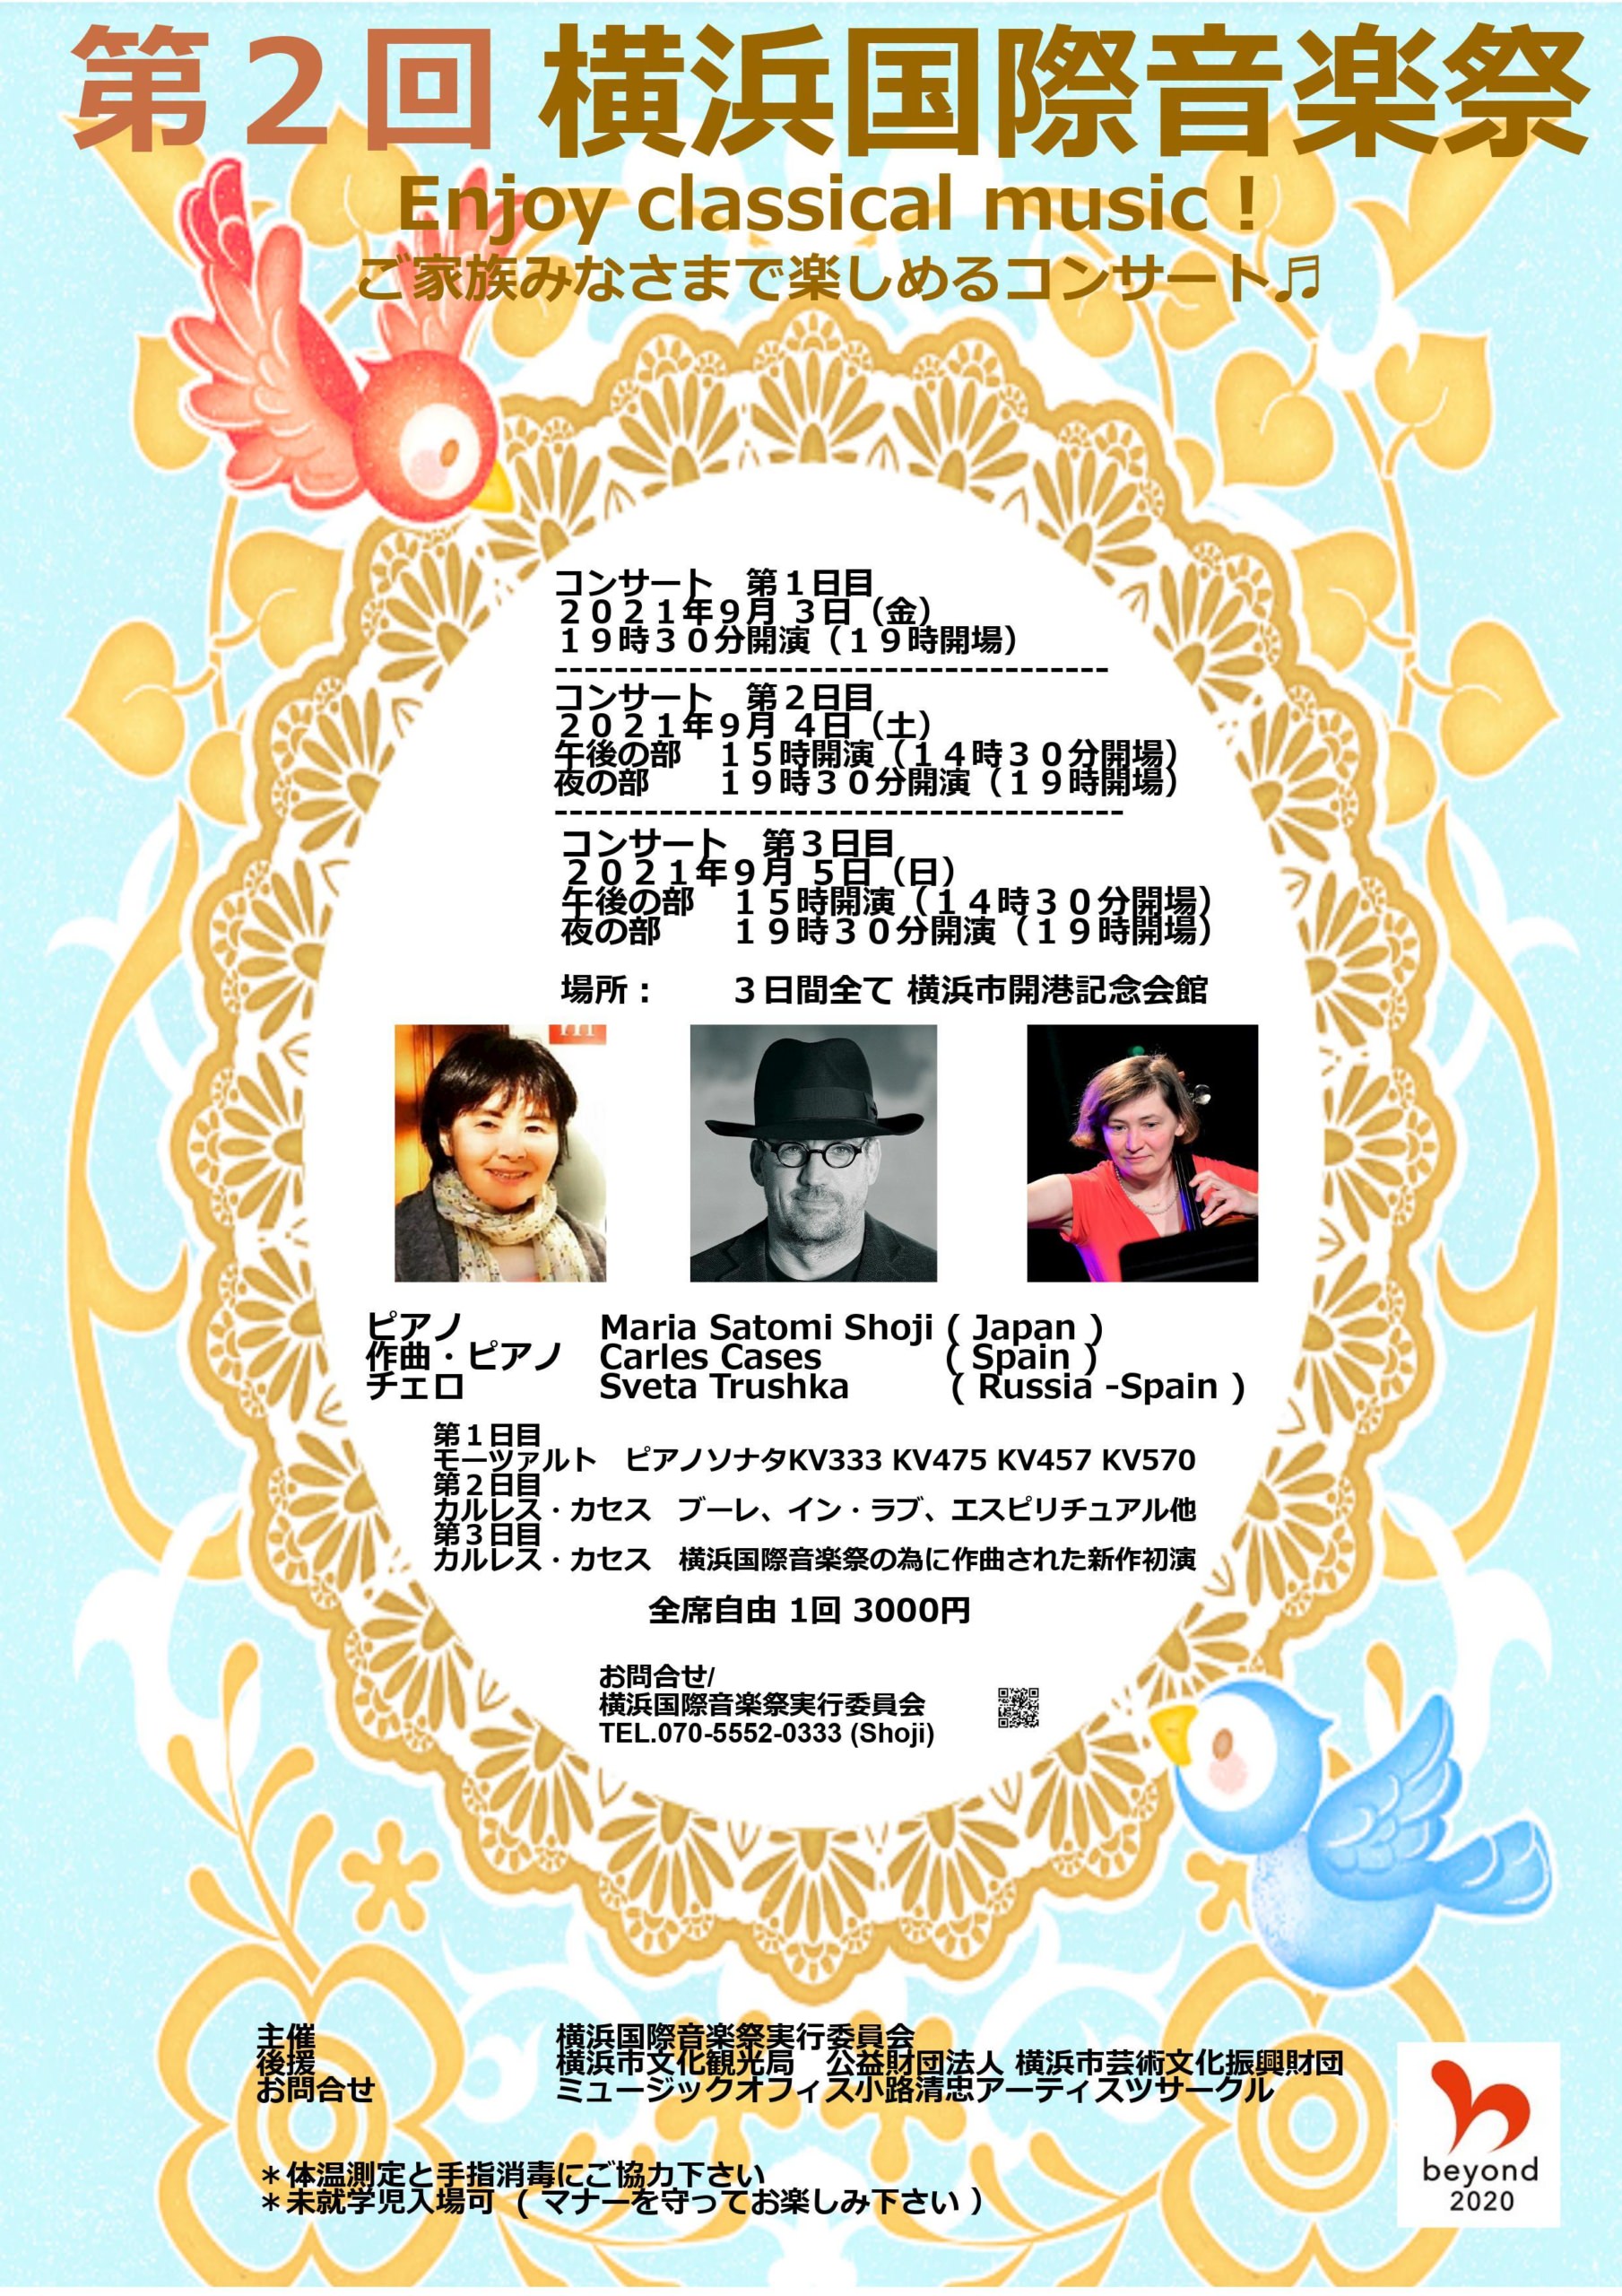 「第2回 横浜国際音楽祭」が9月3日から5日まで
横浜市開港記念会館にて開催　
～エンジョイ！クラシカルミュージック～